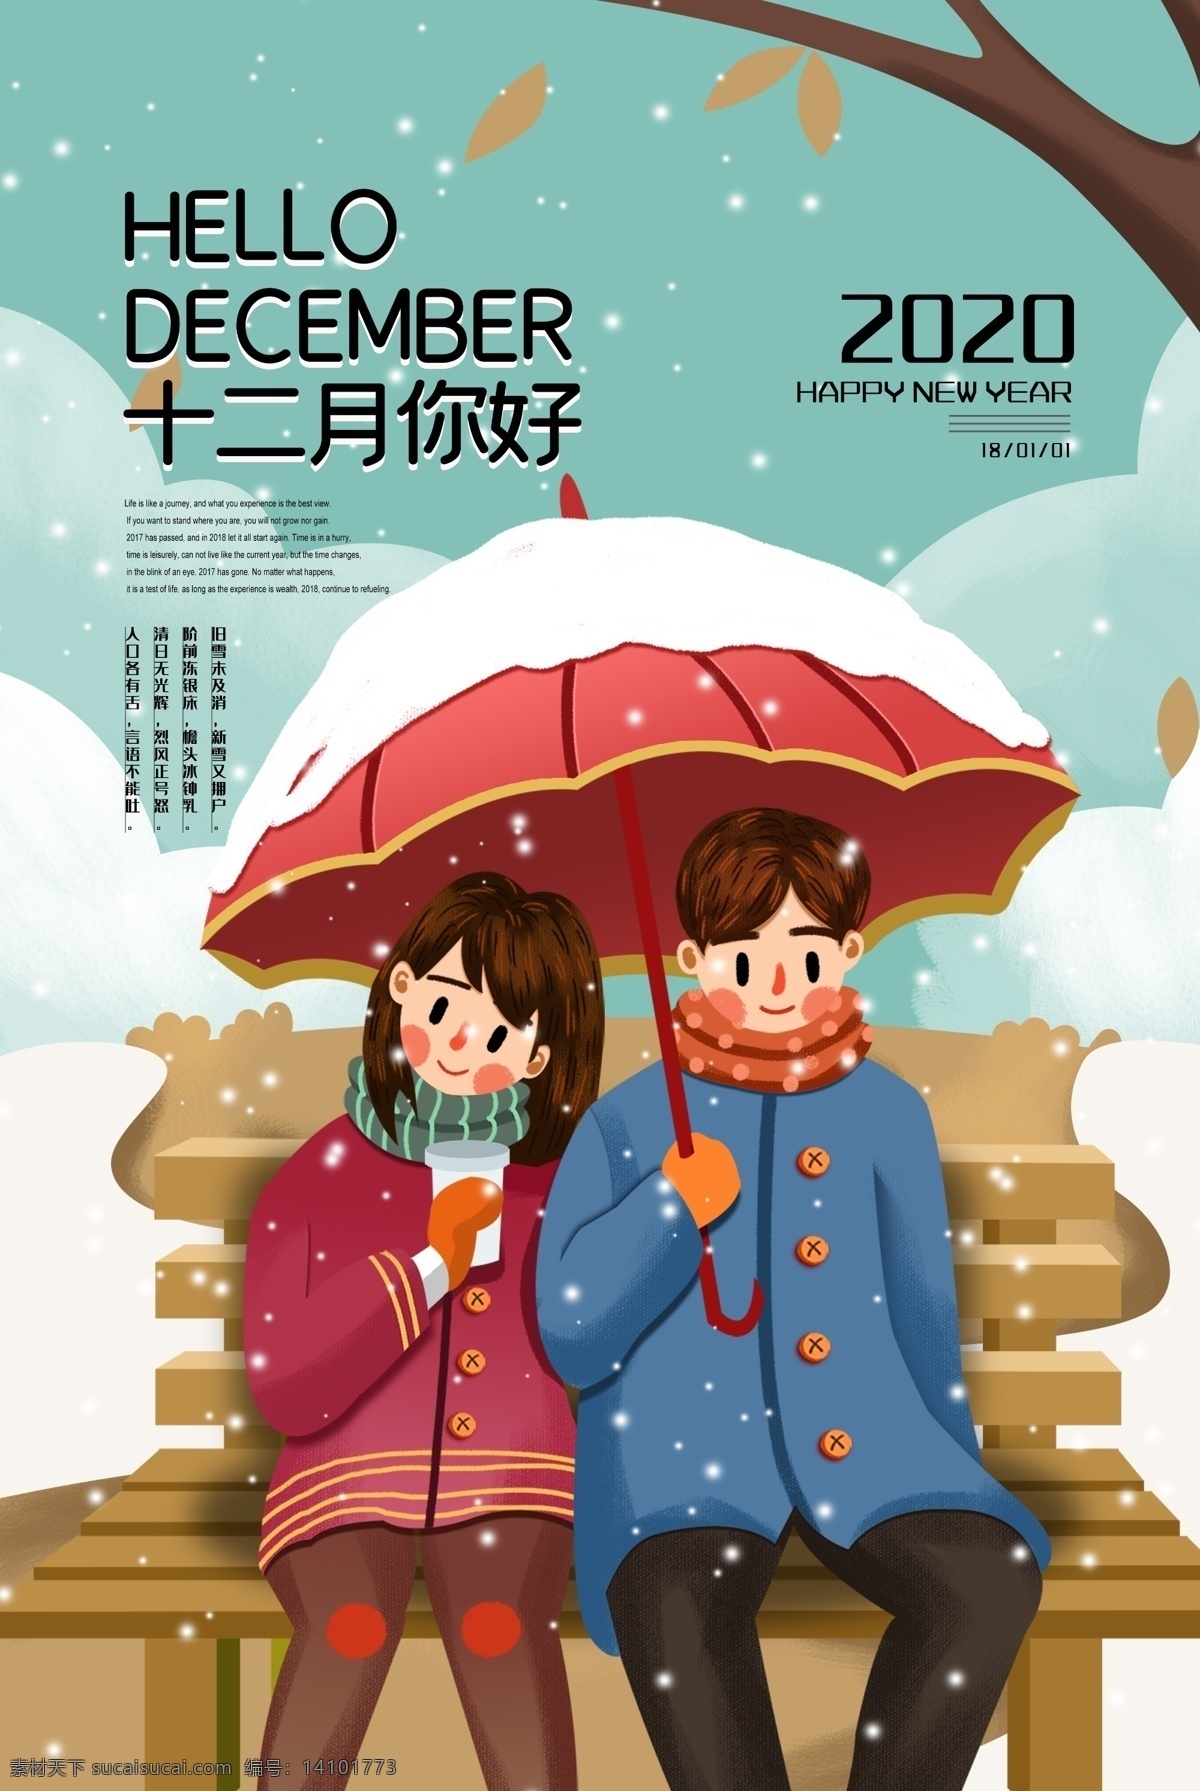 十二月 你好 时节 海报 下雪 插画 卡通 手绘